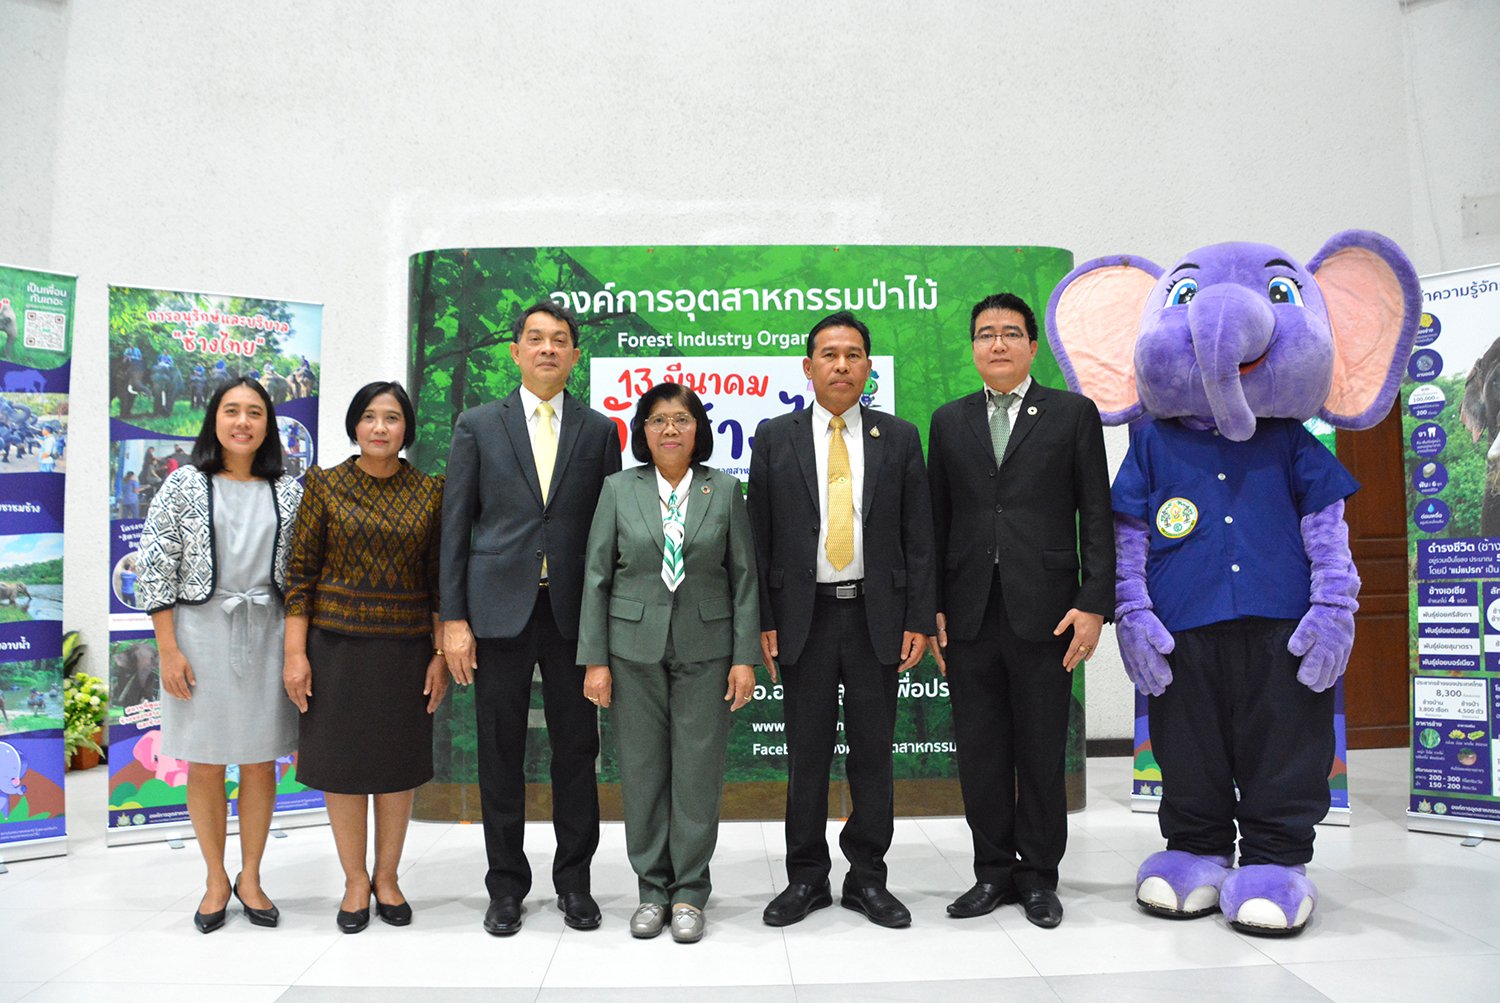 “13 มีนาคม วันช้างไทย” อนุรักษ์ช้างไทย “สร้างคุณค่า เชิดชูเกียรติช้างไทย”